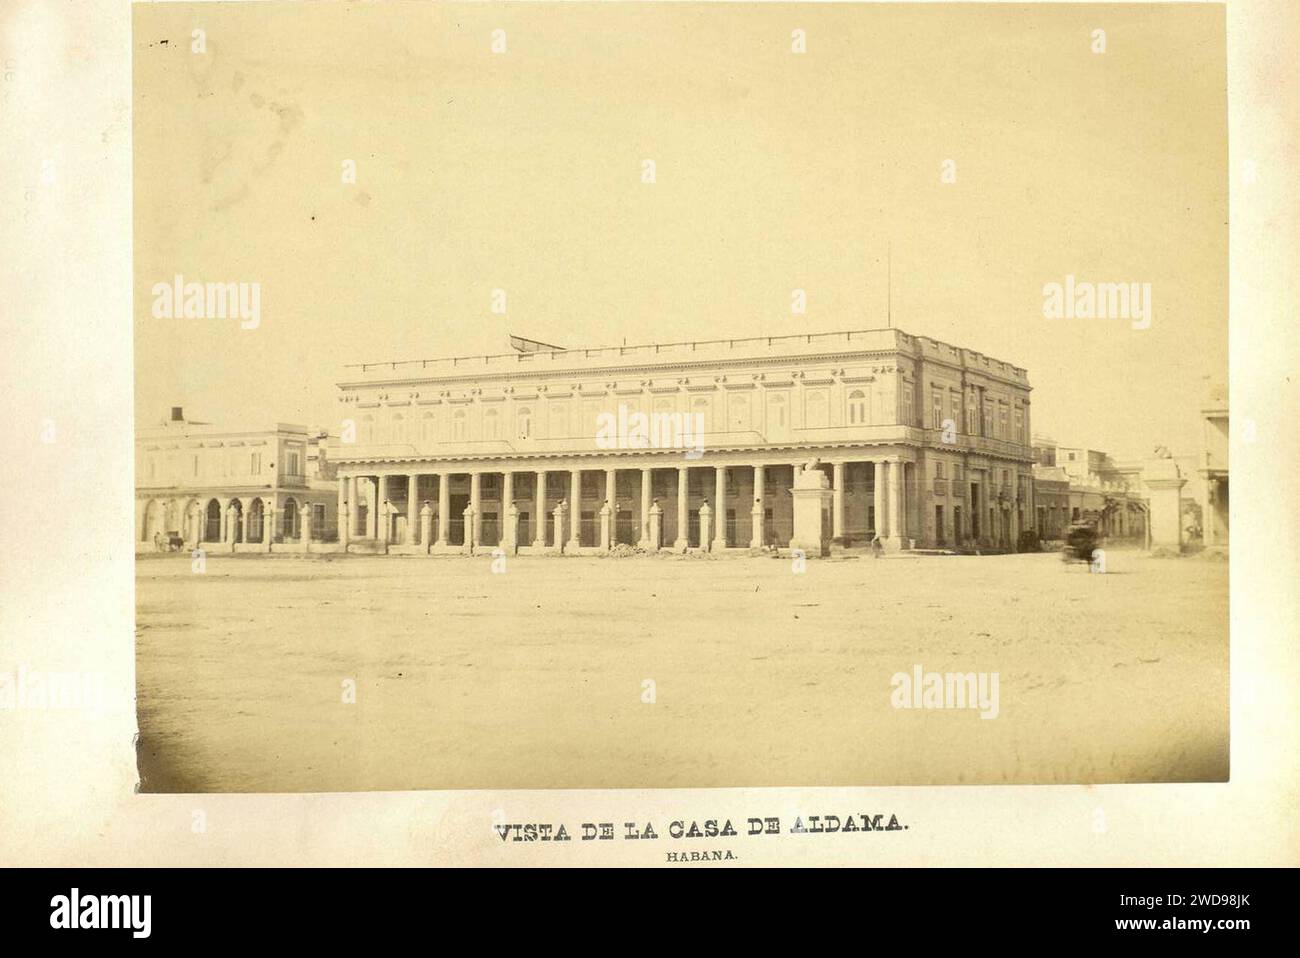 1872, Álbum histórico fotográfico de la Guerra de Cuba desde su principio hasta el Reinado de Amadeo I, Vista de la casa de Aldama.—Habana. Stock Photo